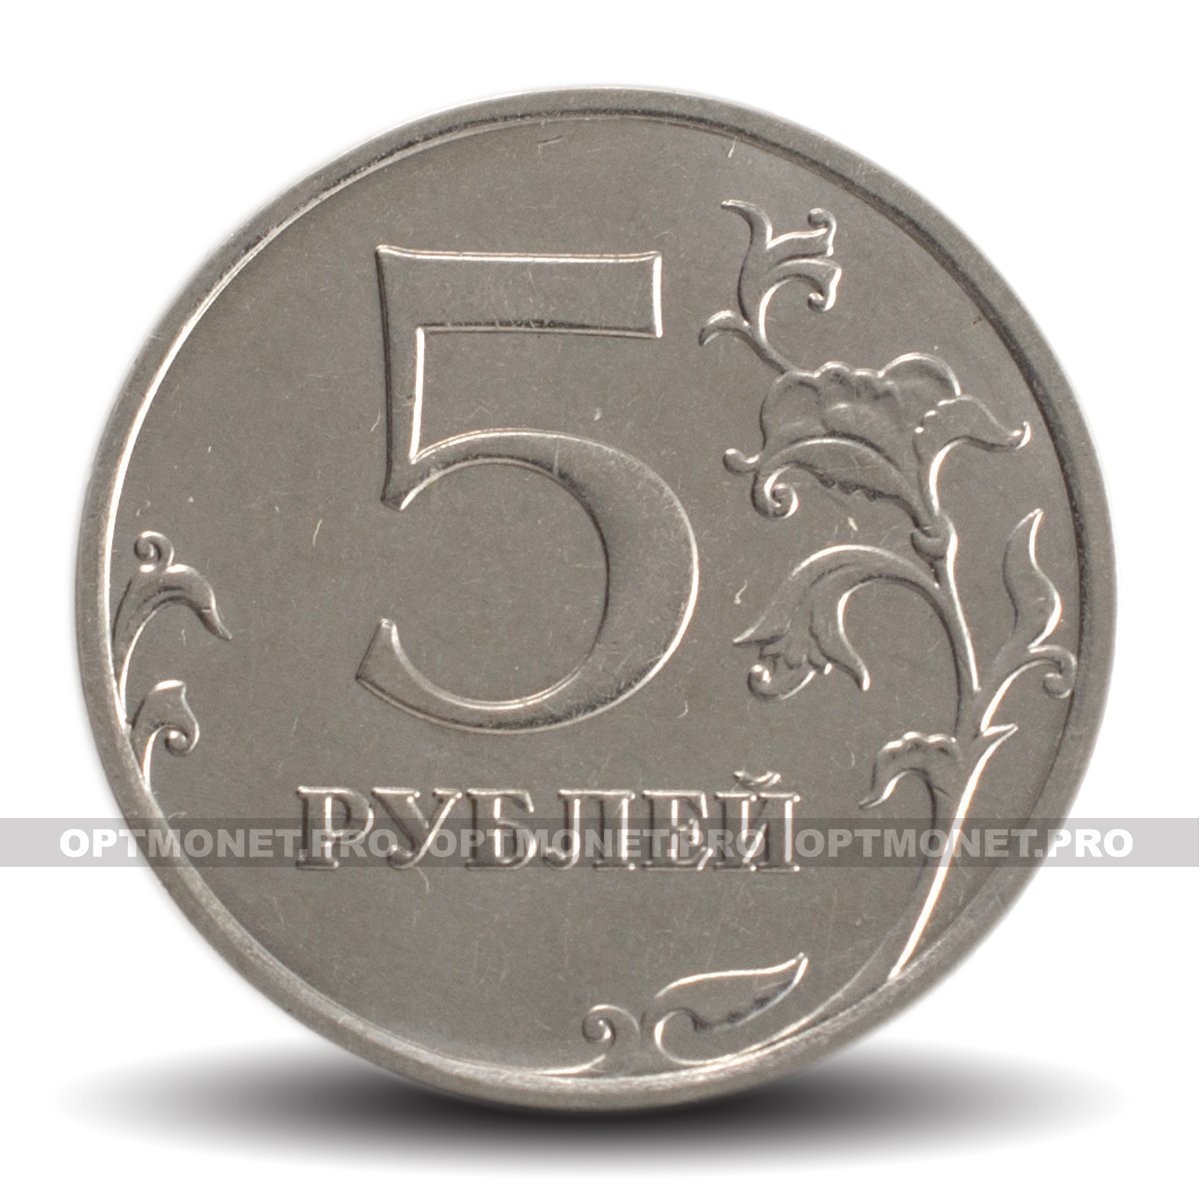 5 Рублей 2014 года ММД. Пять рублей 2014 года. Пять рублей до 2014 года. Россия 5 рублей 2014 год (ММД).